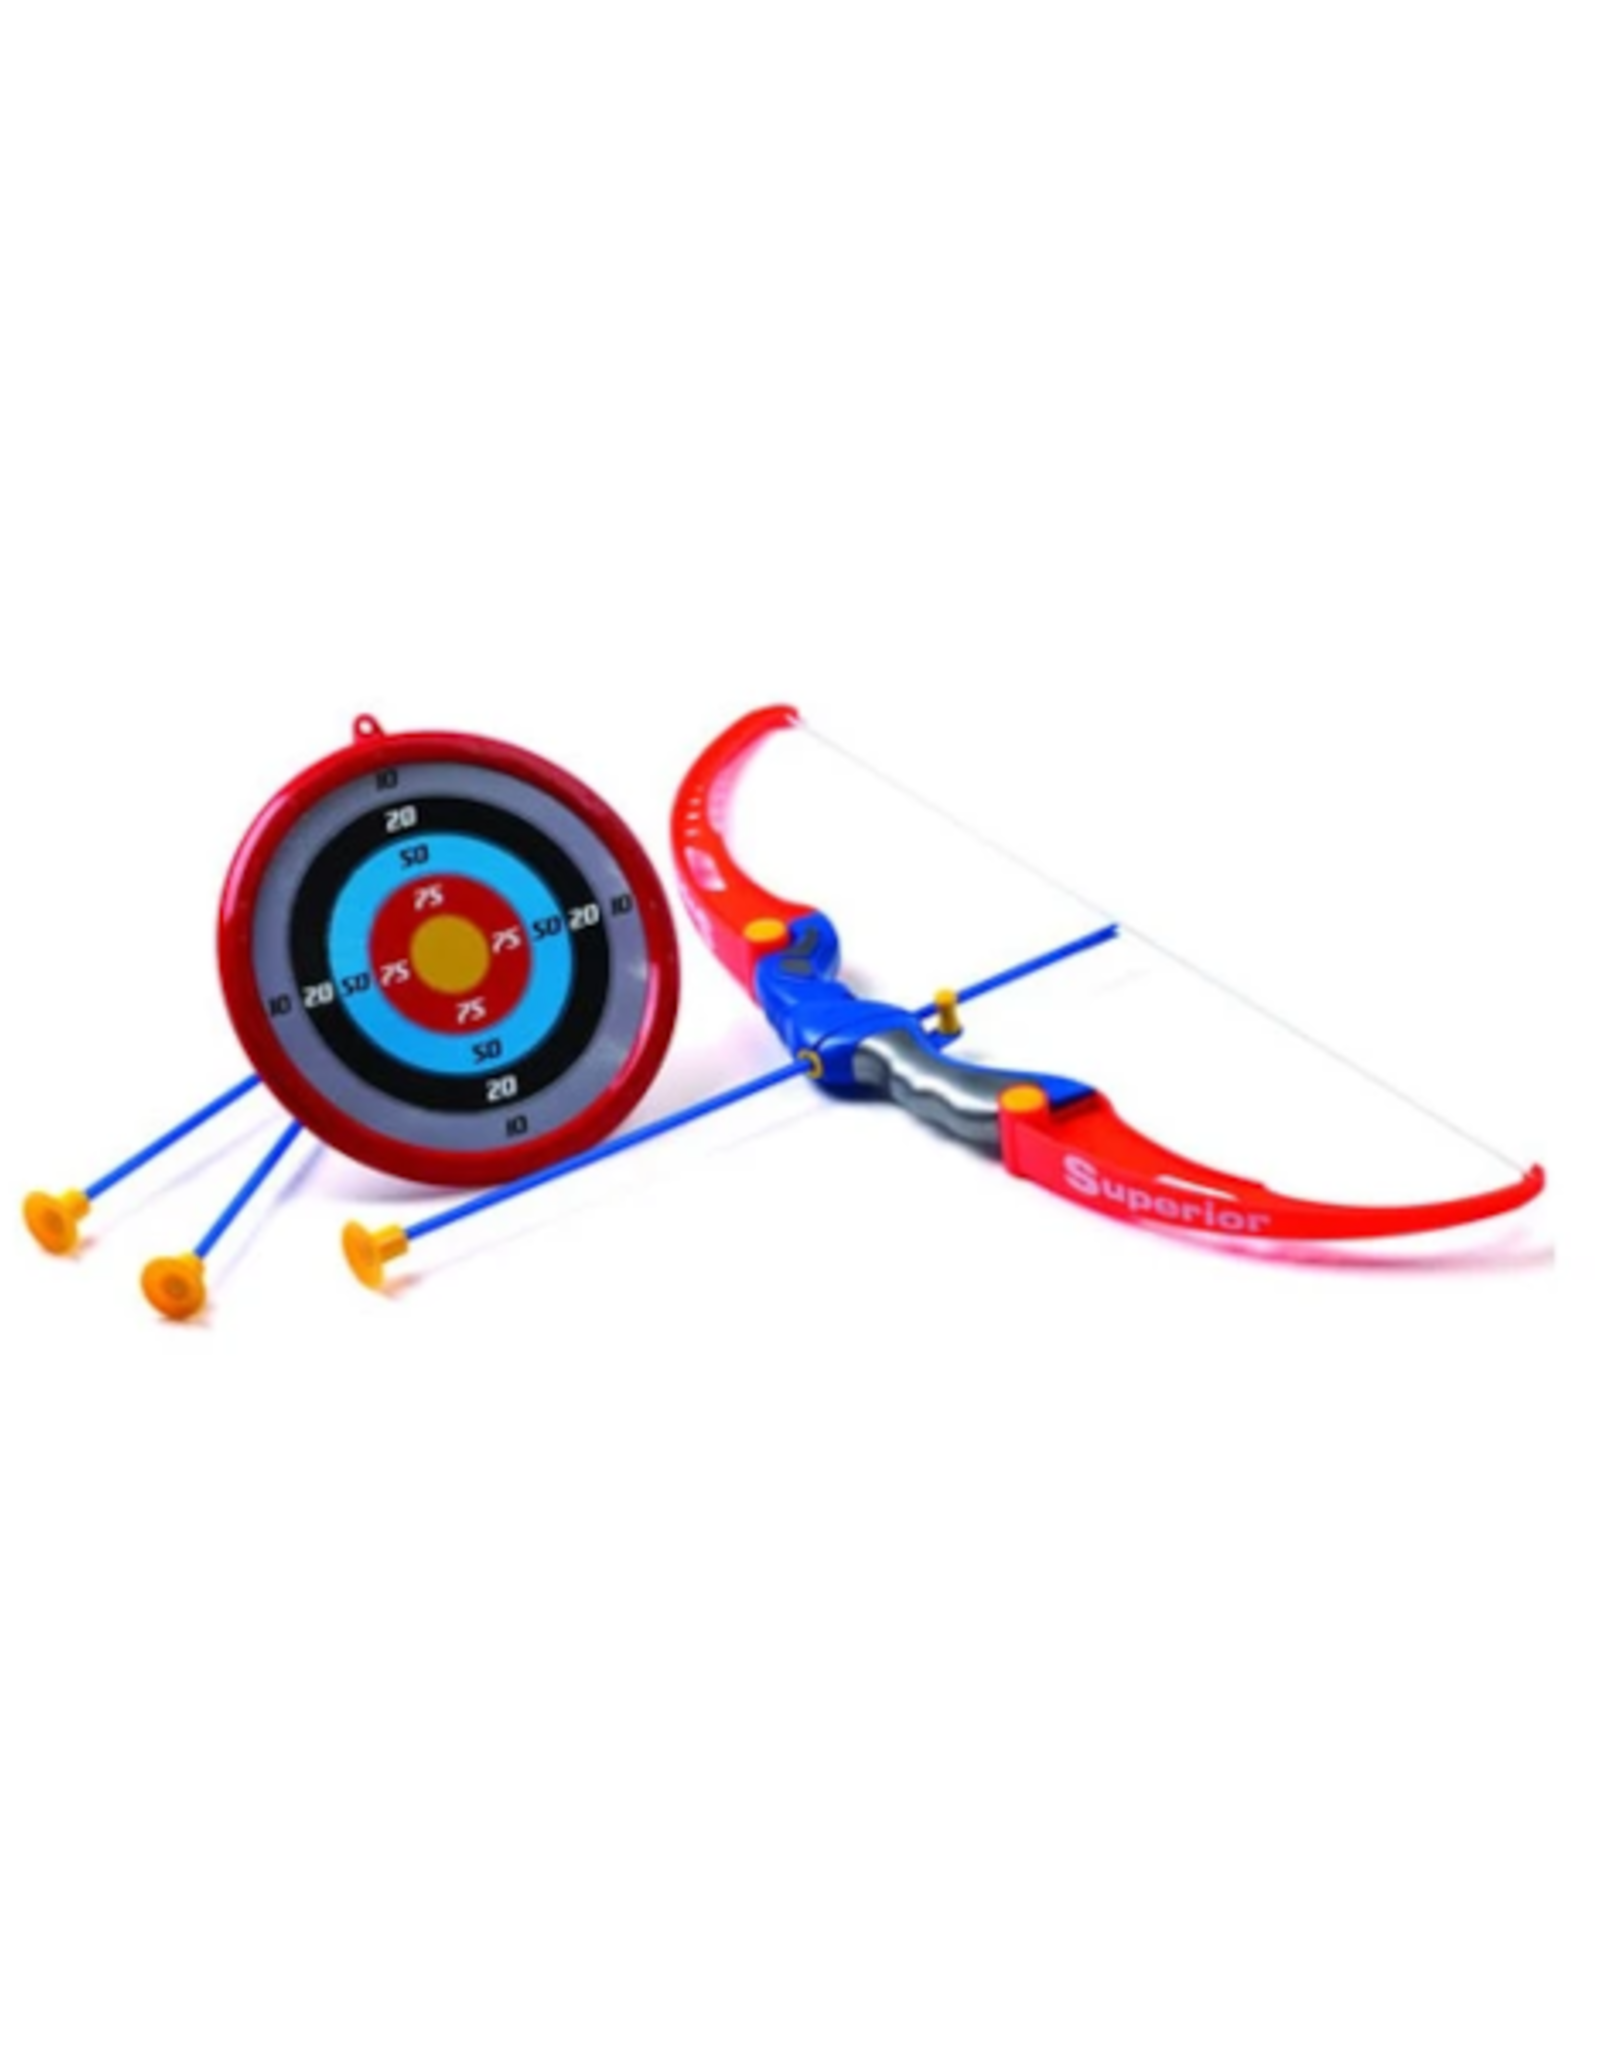 Bullseye - Archery Set